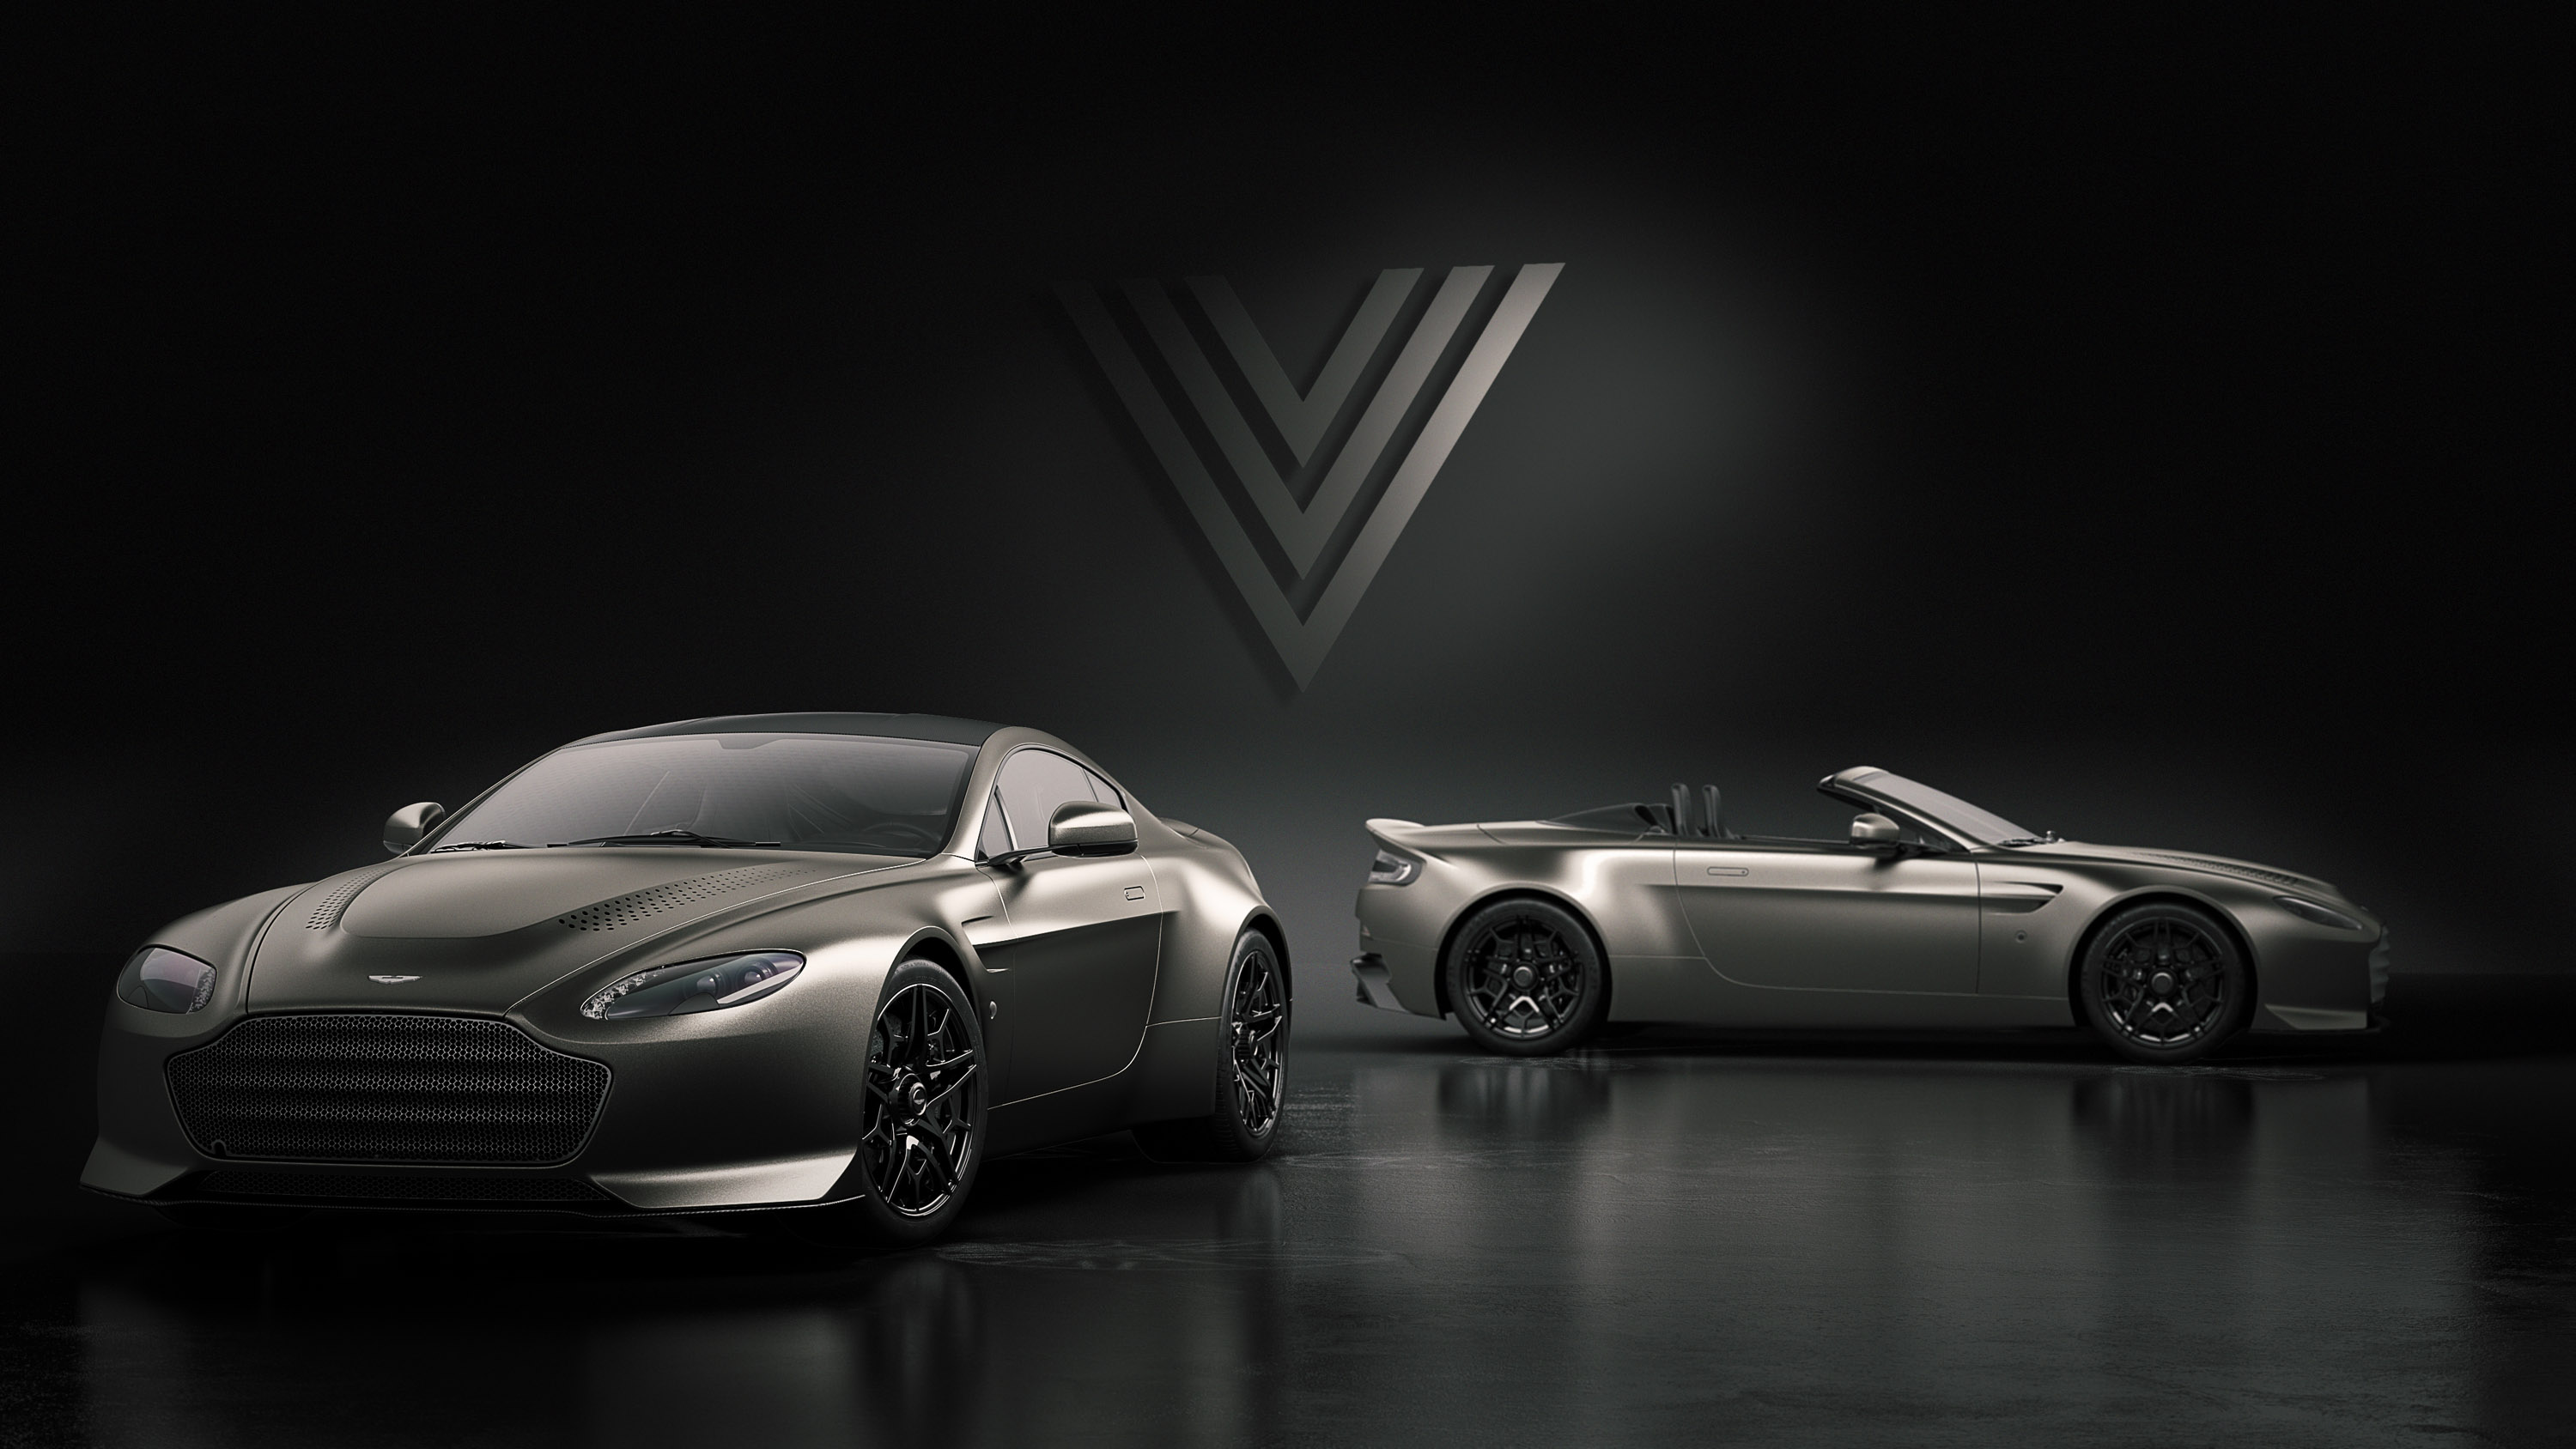 Хорошо известный Aston Martin Vantage V600 был обновлен и представлен как ограниченное издание Vantage V600s - автомобиля, вдохновленного легендарной моделью.